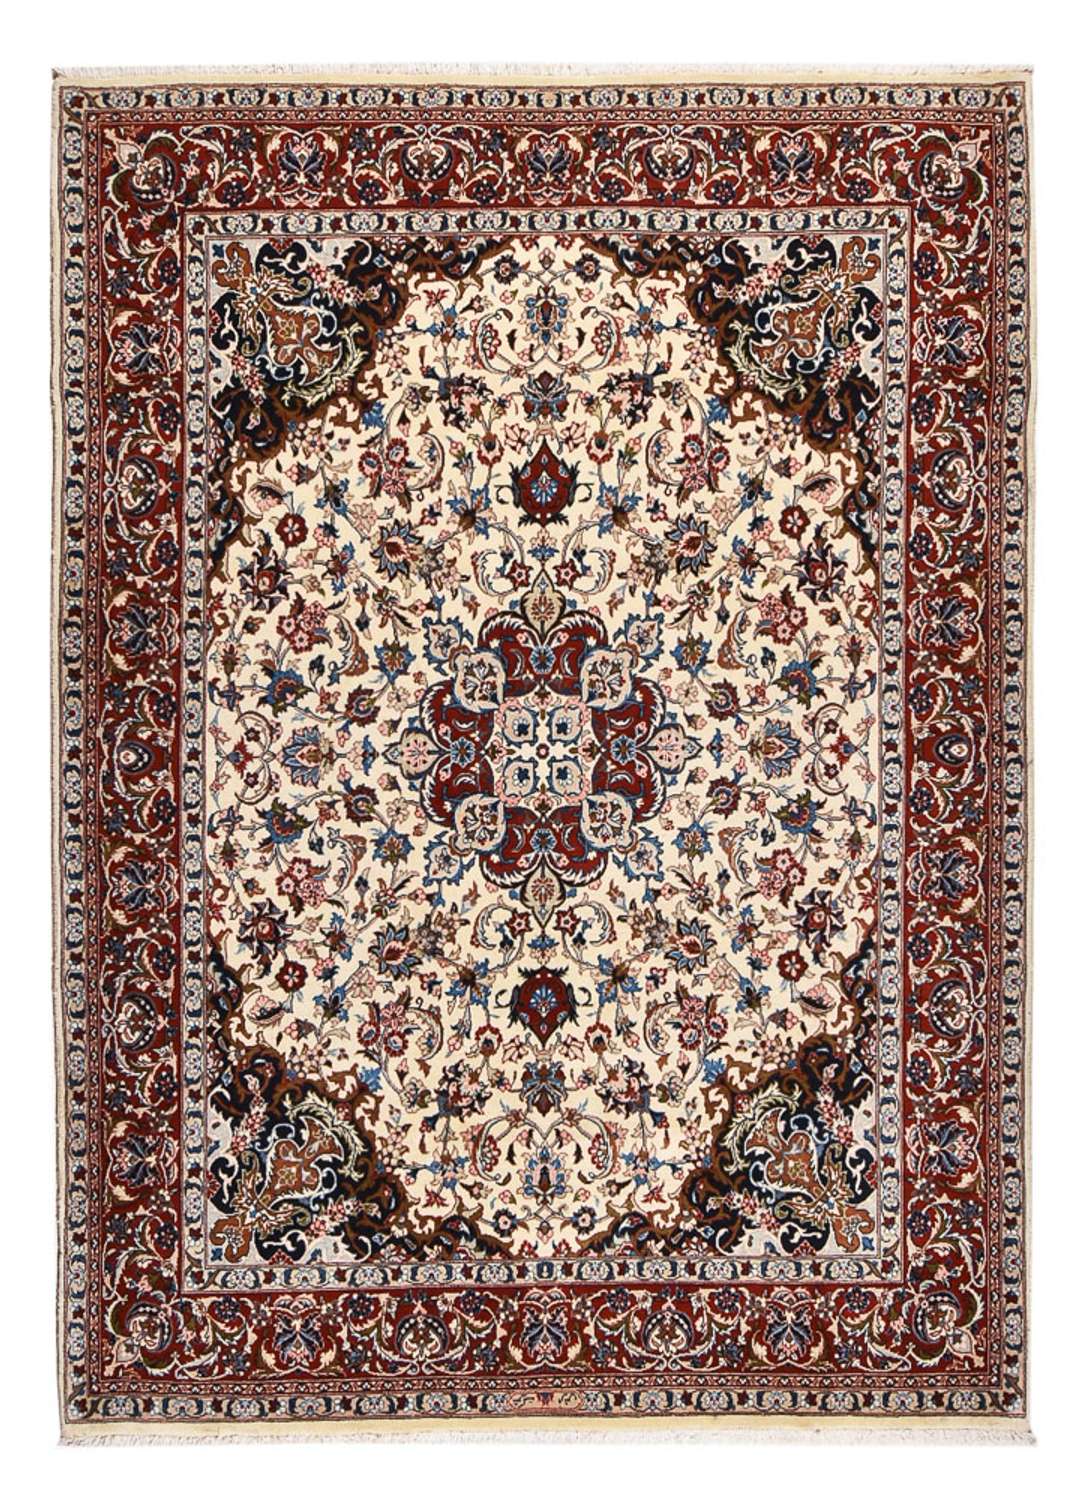 Tapis persan - Classique - 274 x 202 cm - beige